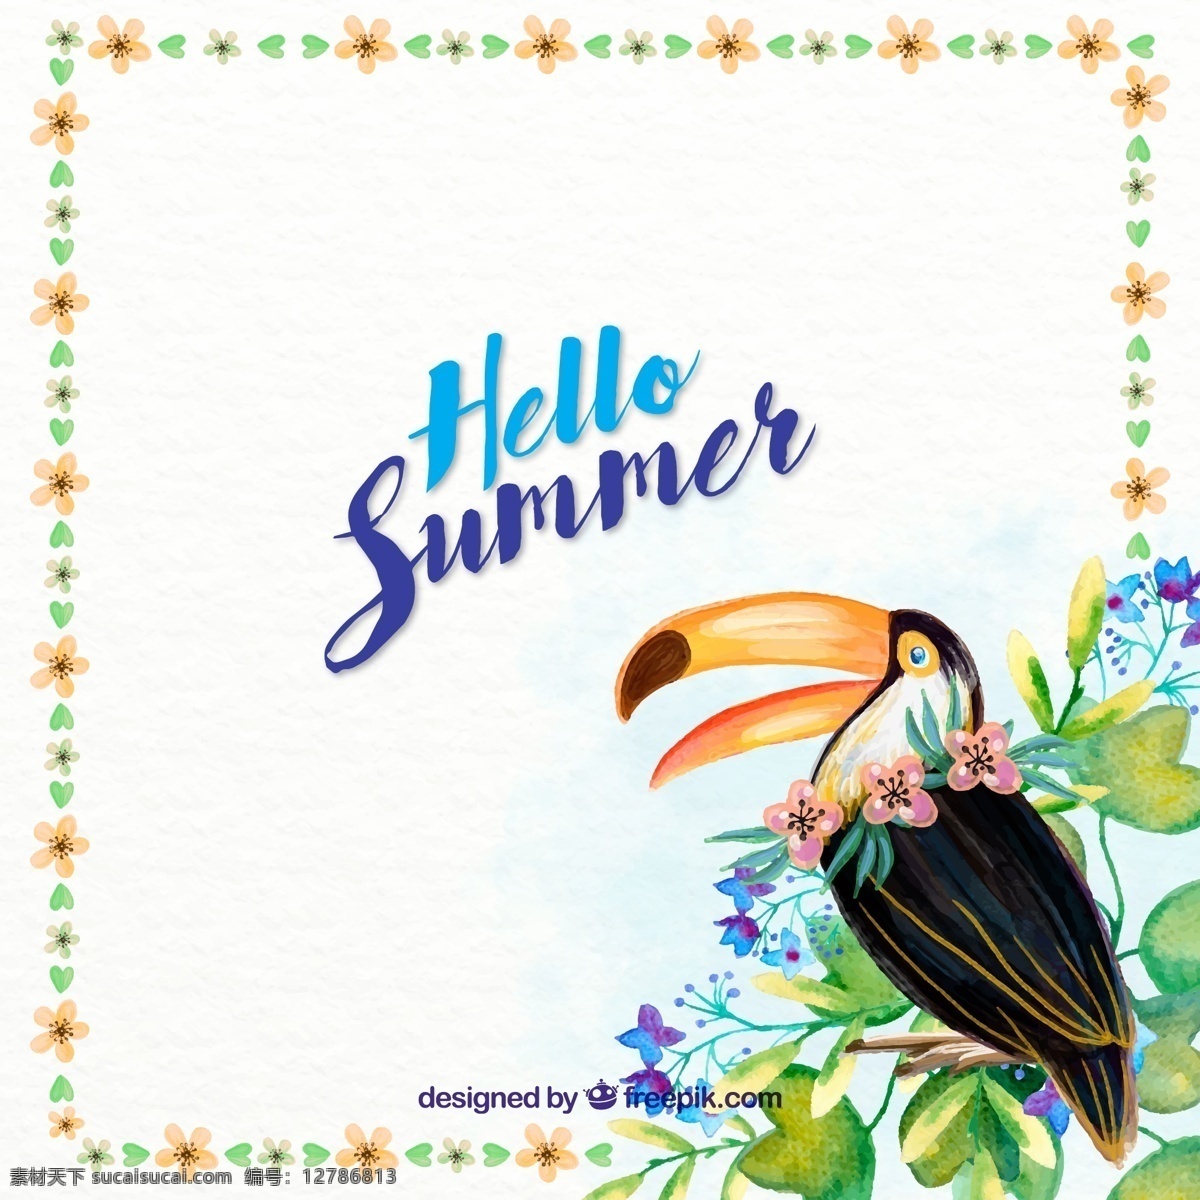 彩绘 夏季 犀鸟 花卉 矢量 彩色 水彩 手绘 动物 夏天 花朵 插画